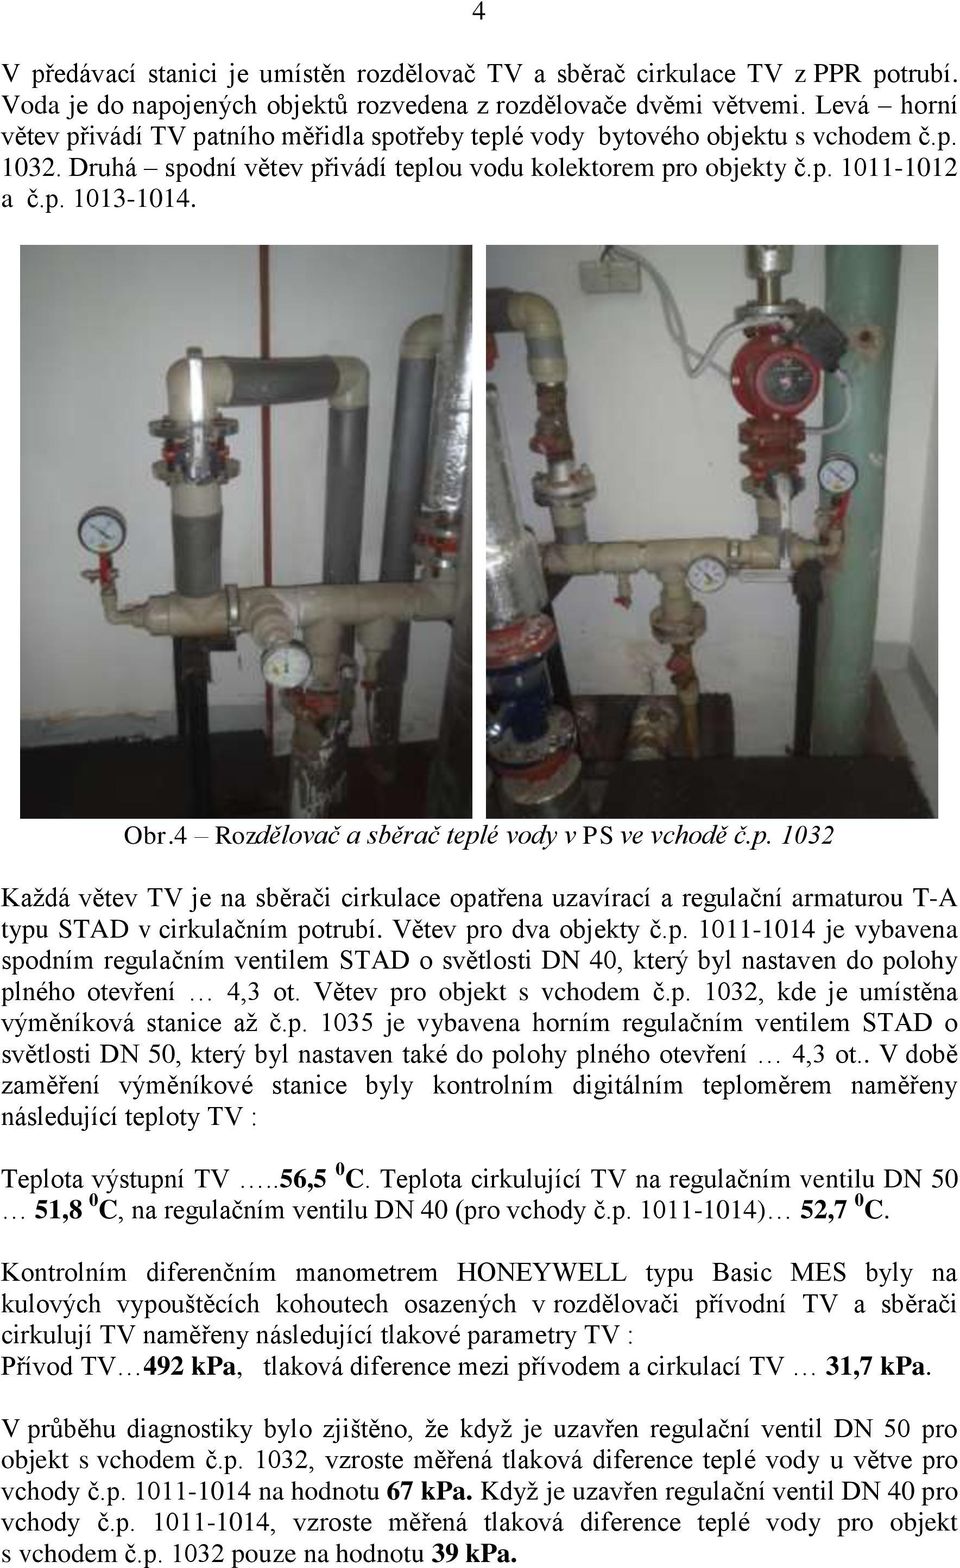 Obr.4 Rozdělovač a sběrač teplé vody v PS ve vchodě č.p. 1032 Každá větev TV je na sběrači cirkulace opatřena uzavírací a regulační armaturou T-A typu STAD v cirkulačním potrubí.